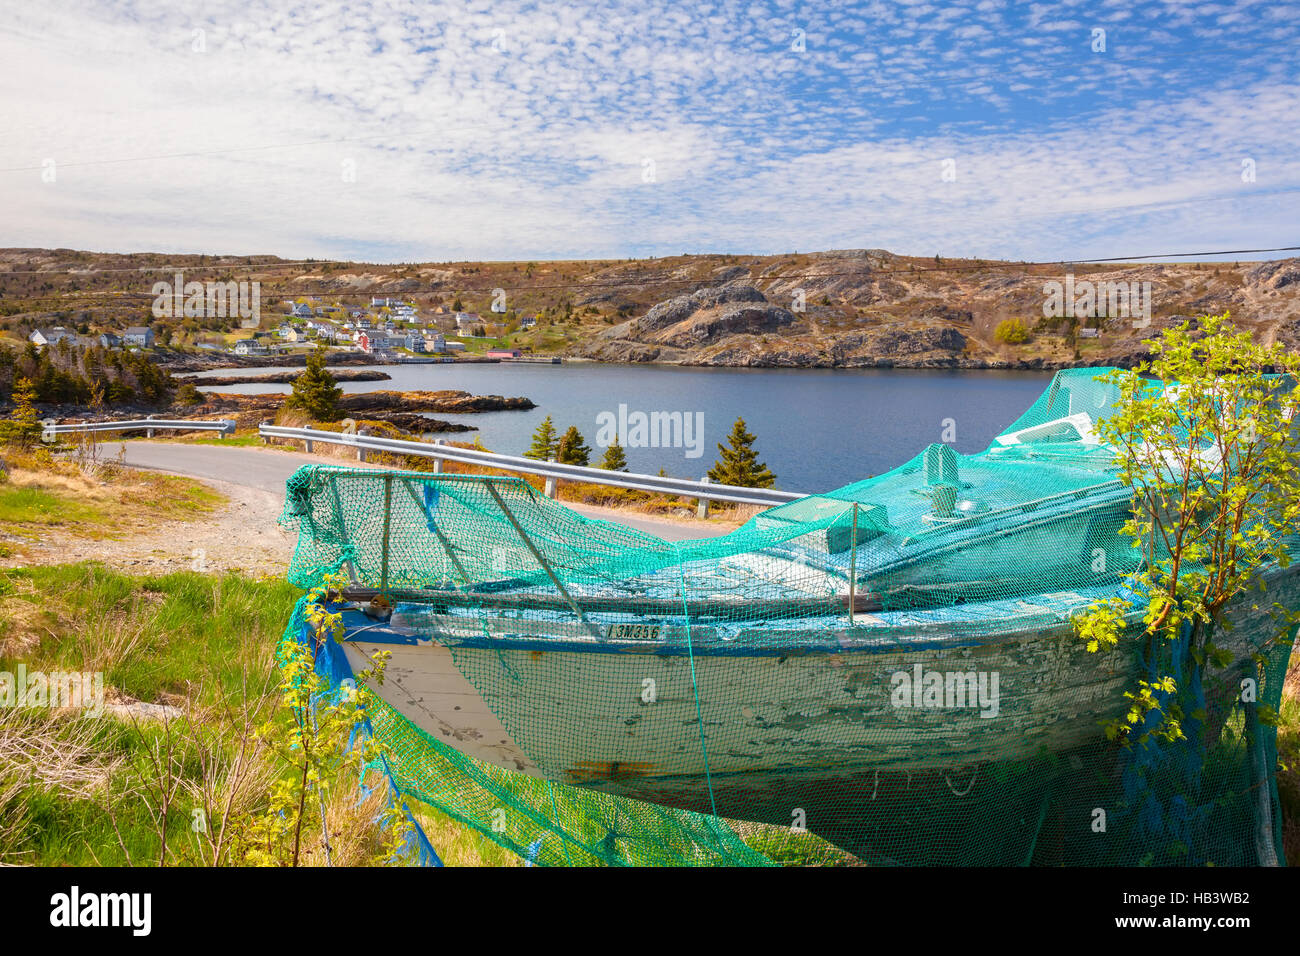 Un vecchio fatiscente peschereccio coperto da una rete da pesca con la città di Brigus in background. Brigus, Terranova in Canada Foto Stock